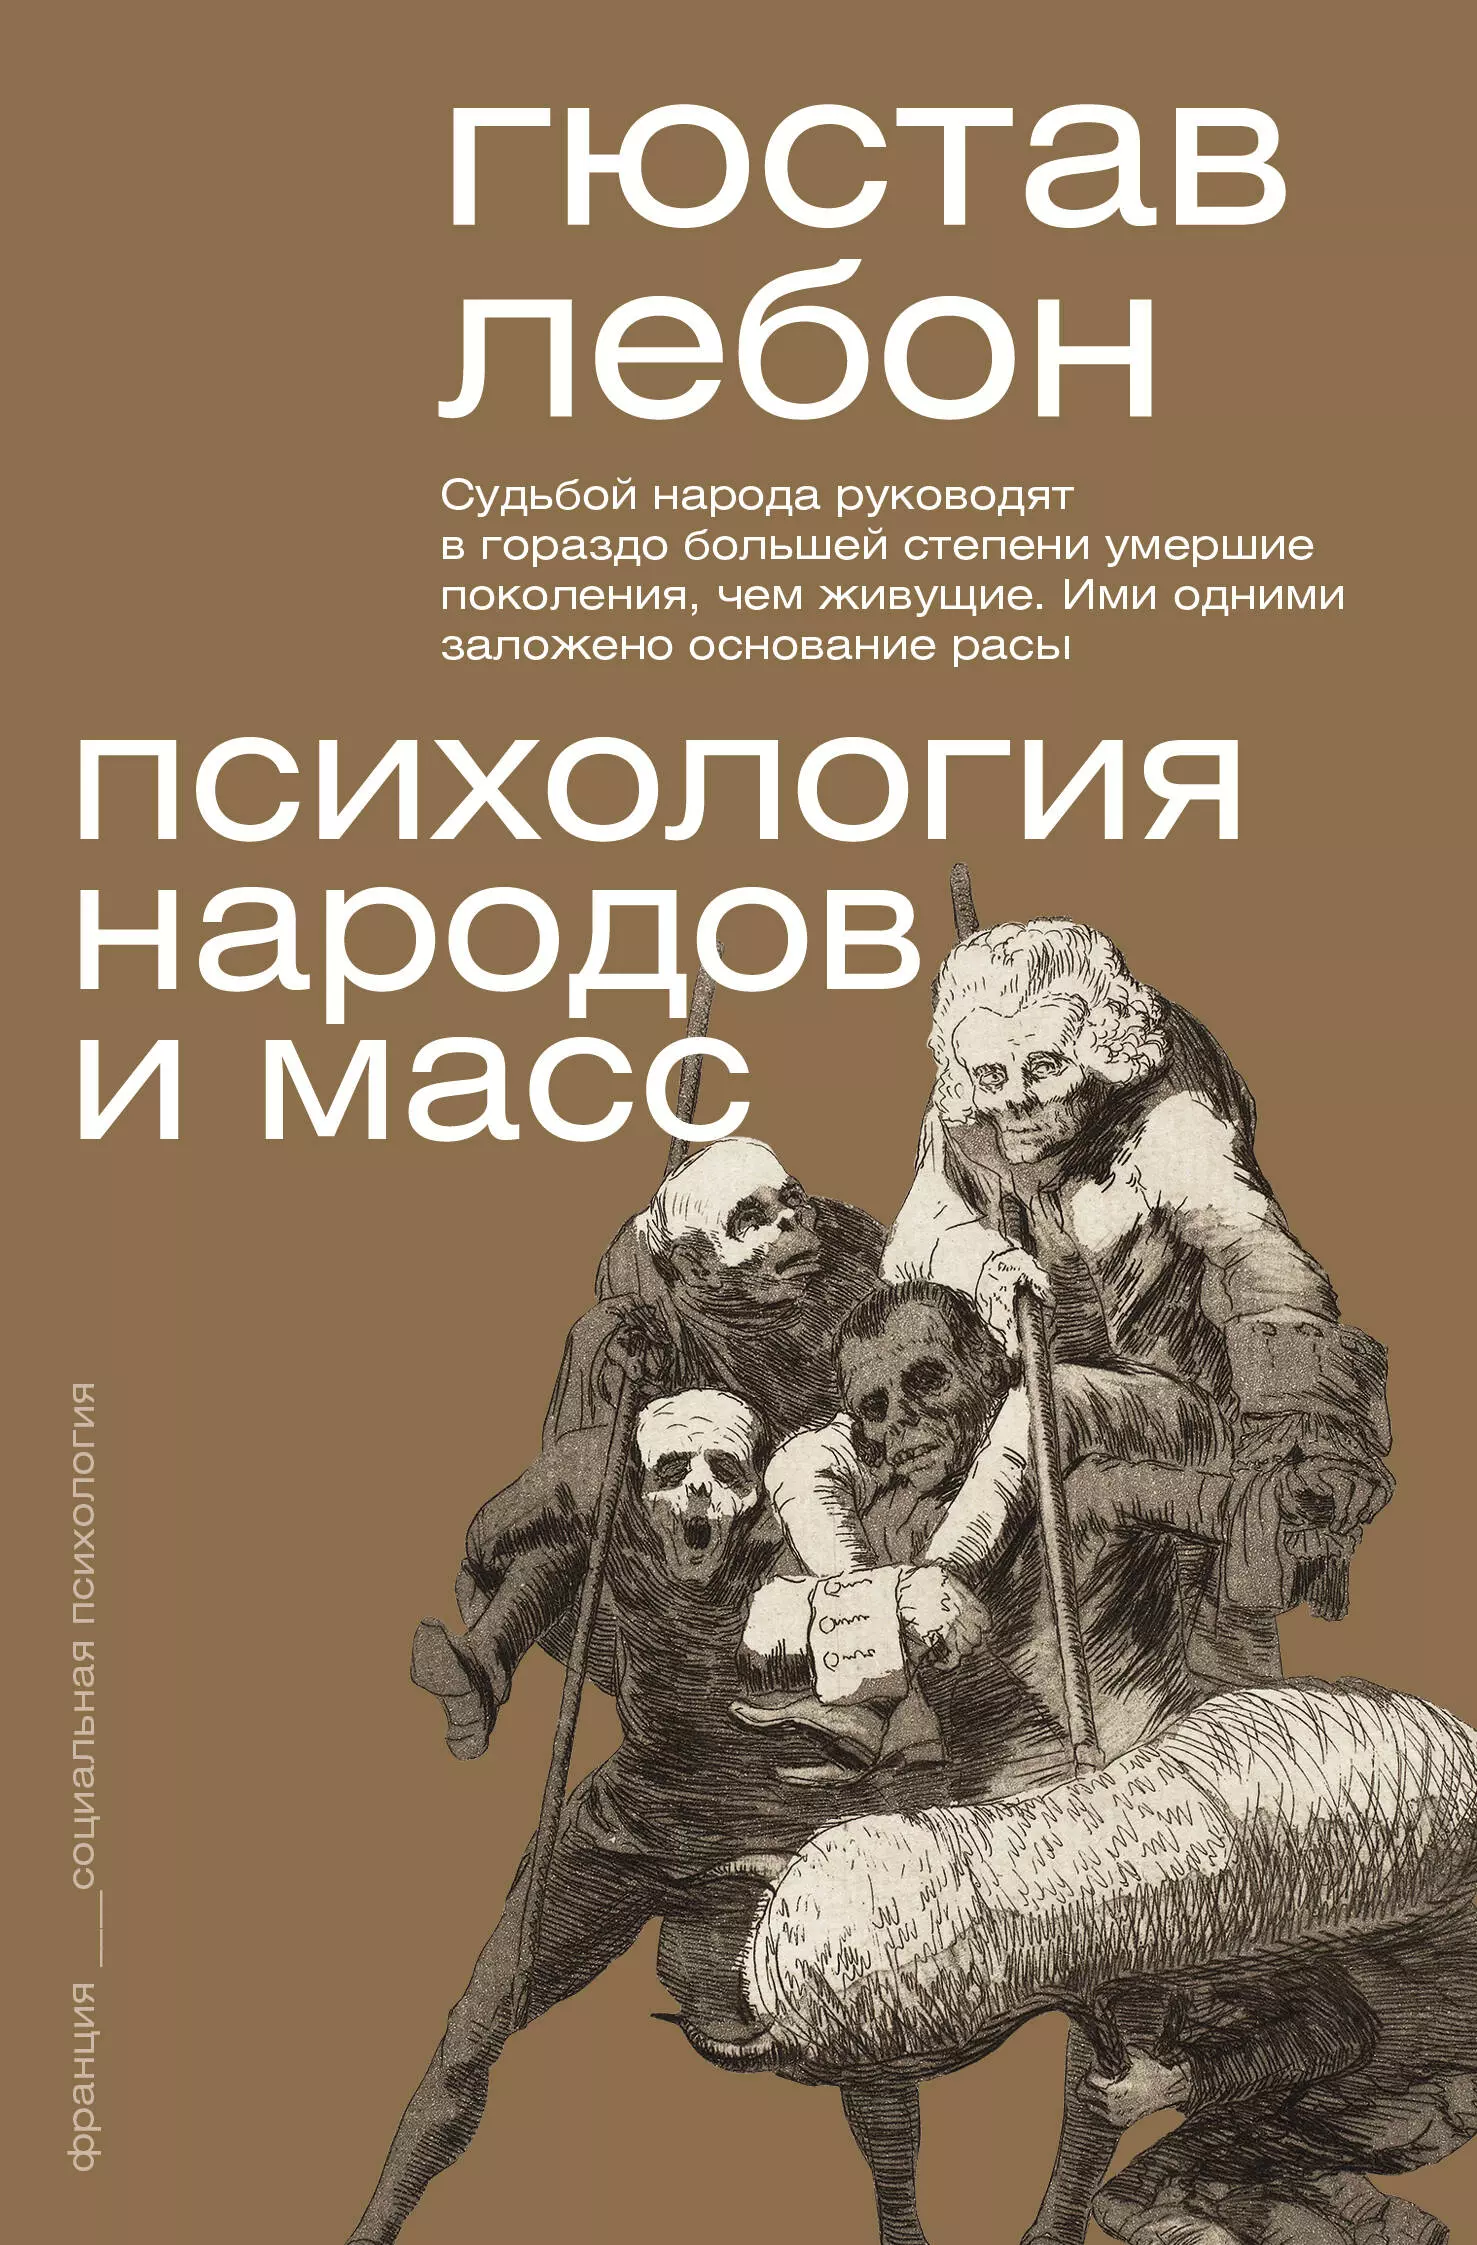 Лебон Гюстав - Психология народов и масс